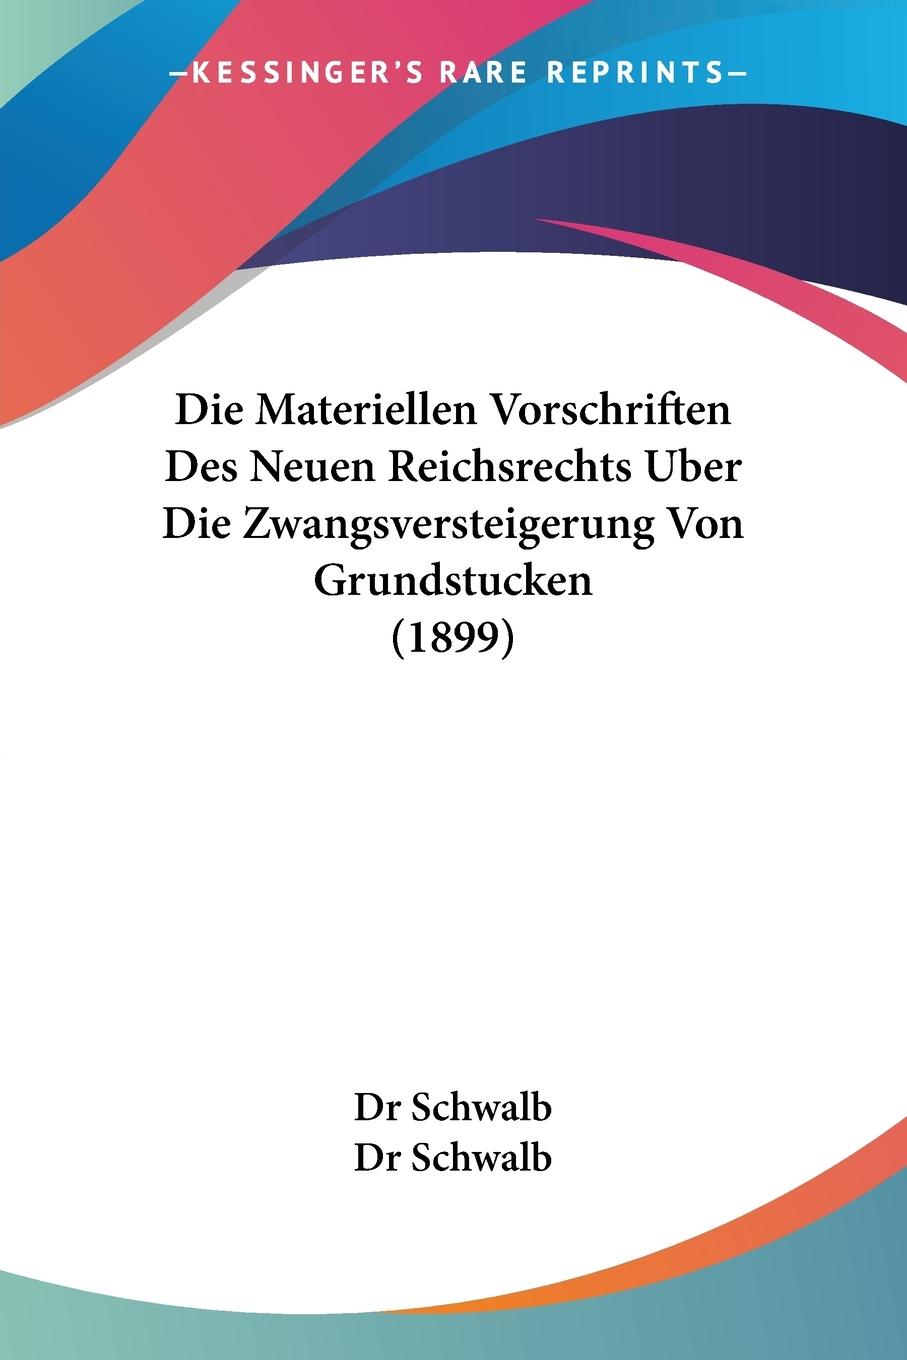 Die Materiellen Vorschriften Des Neuen Reichsrechts Uber Die Zwangsversteigerung Von Grundstucken (1899) - Schwalb